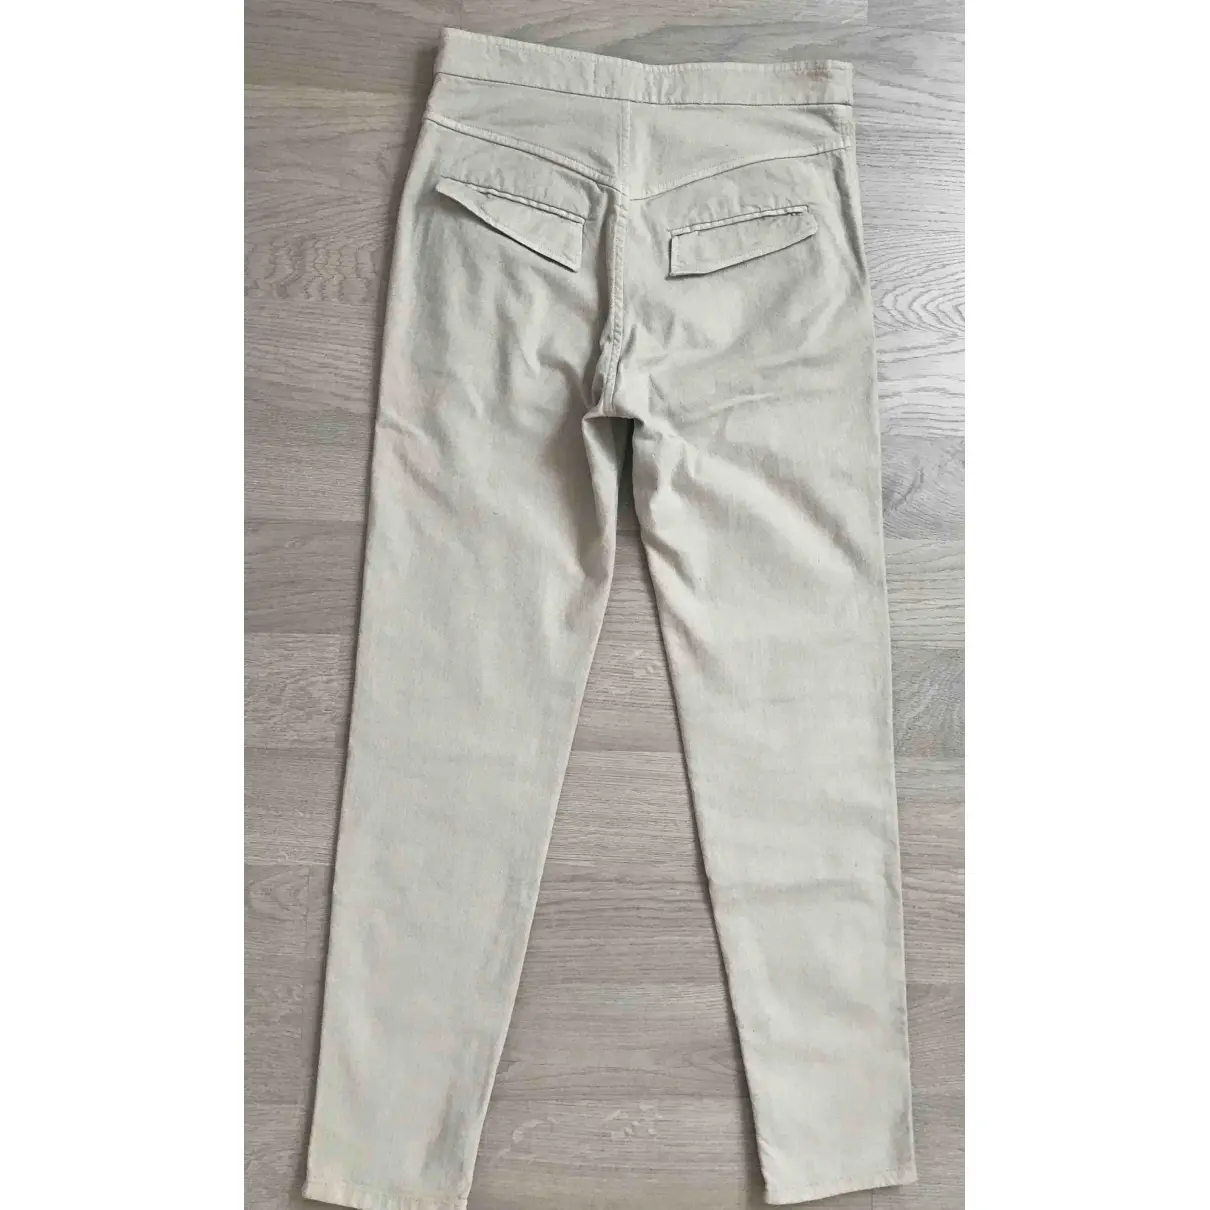 Isabel Marant Slim pants for sale